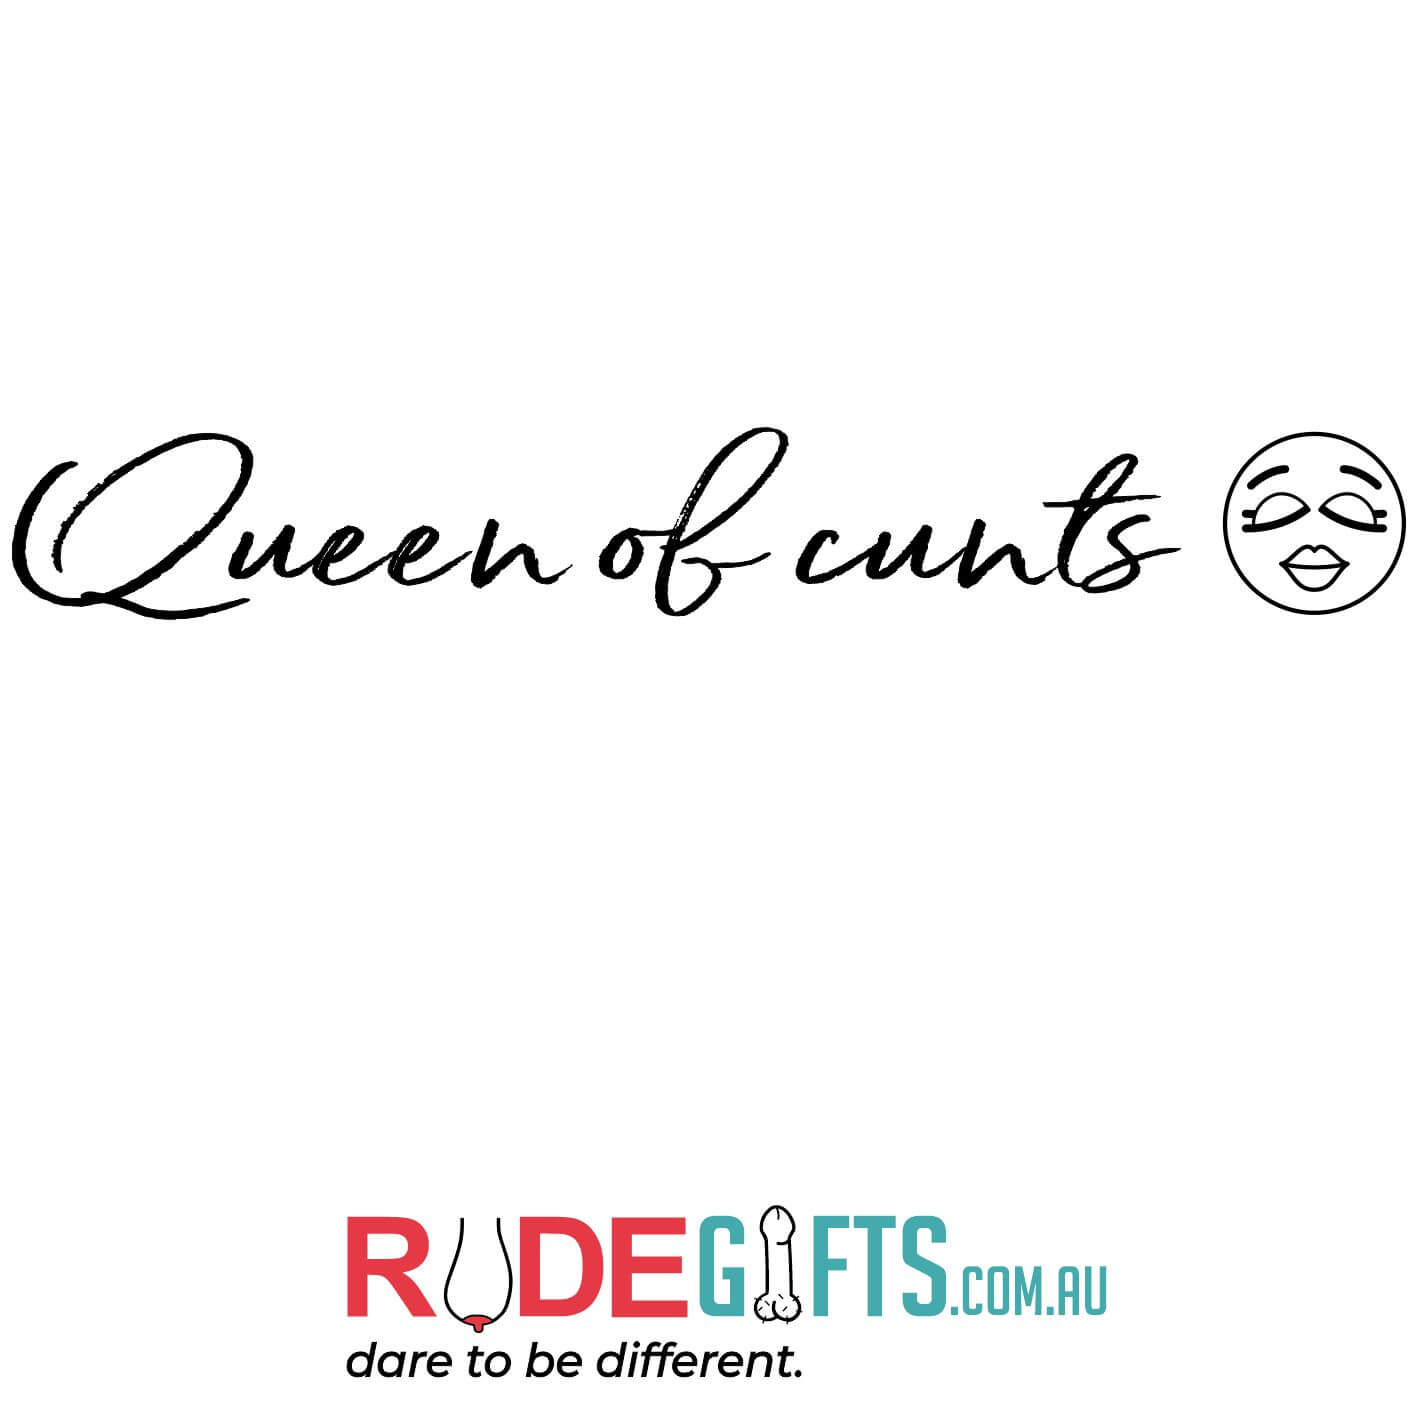 Queen of cunts - 0